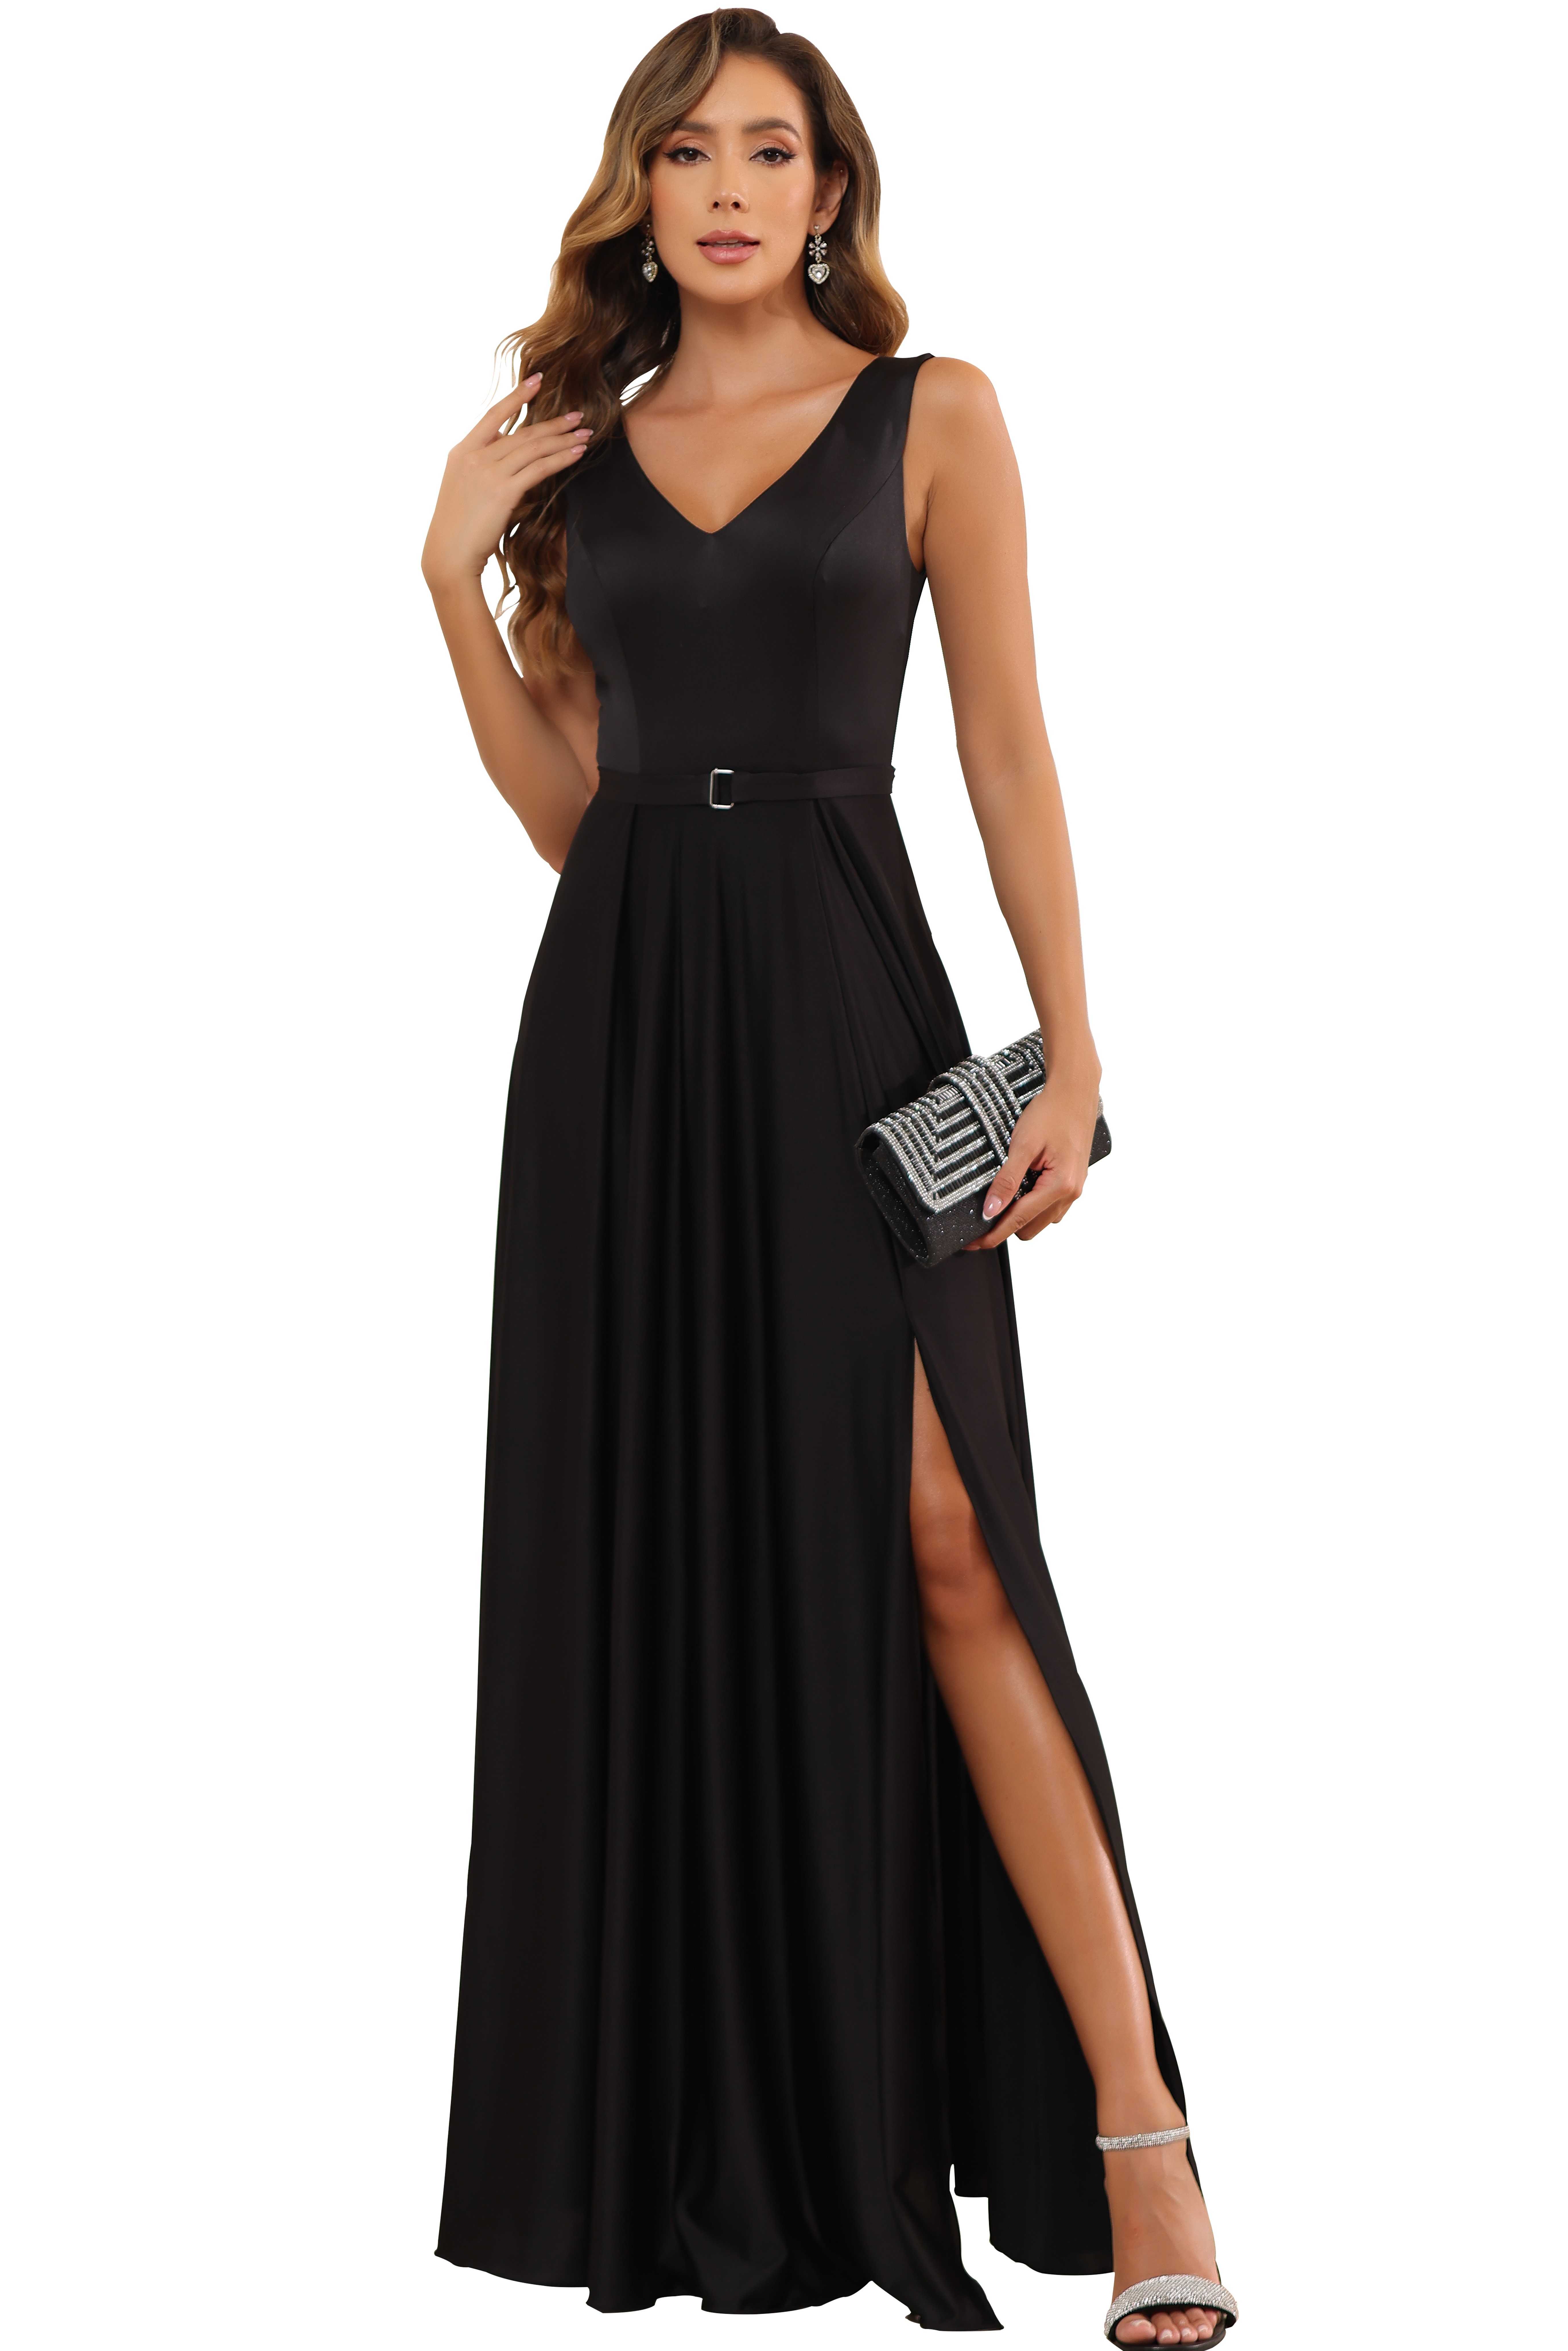 Oknass Black V-neck Sleeveless Split Simple Cocktail Prom Dress